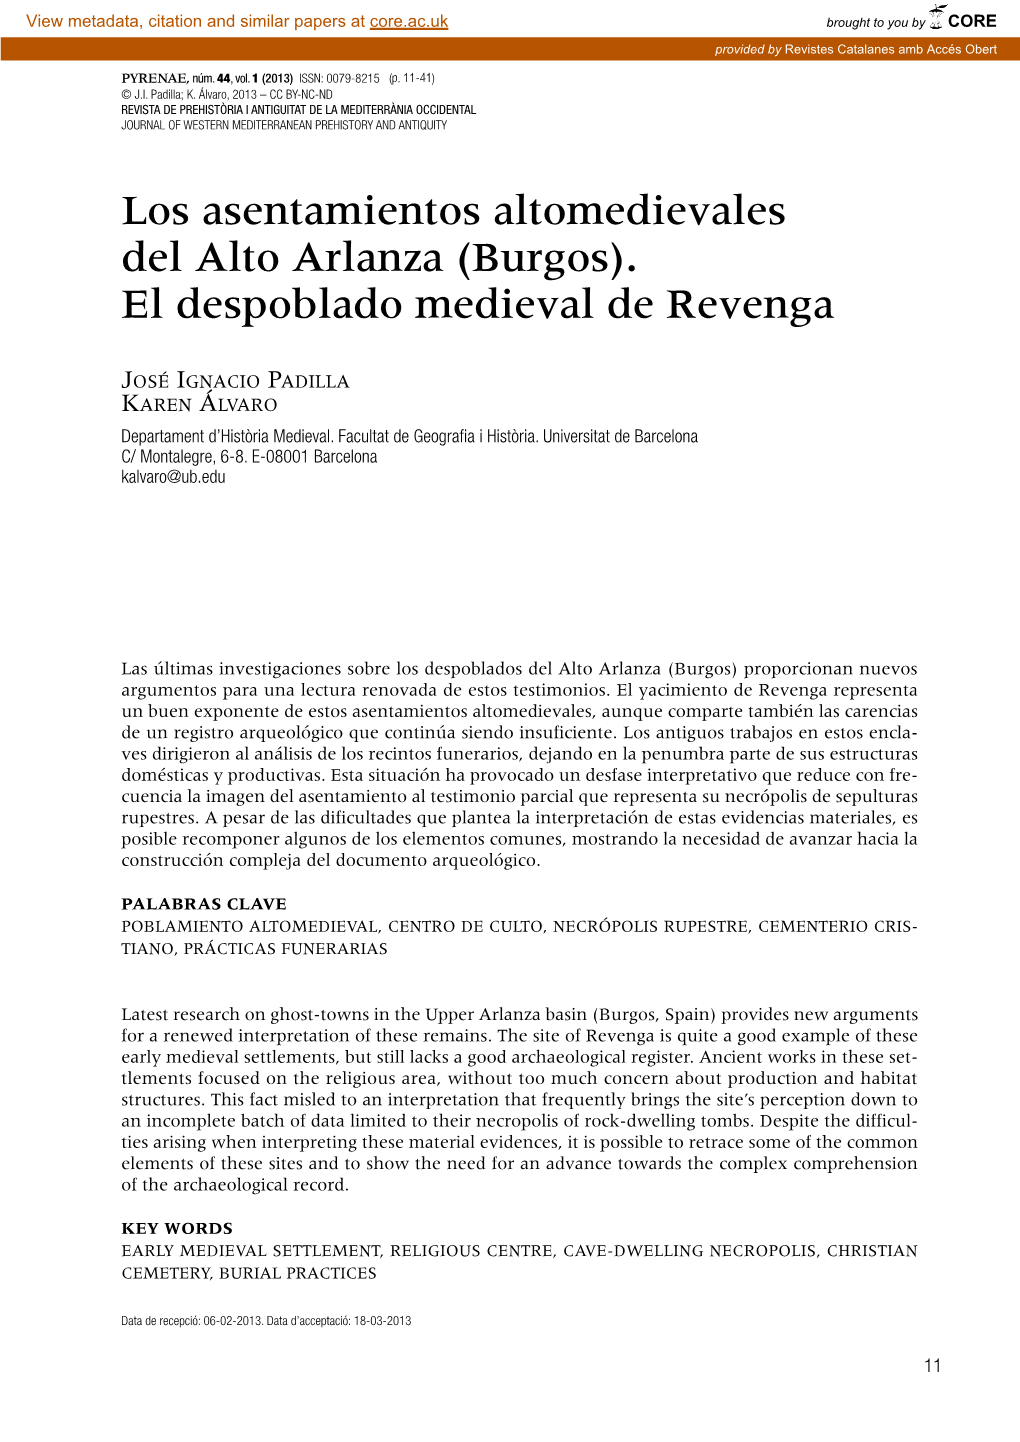 Los Asentamientos Altomedievales Del Alto Arlanza (Burgos). El Despoblado Medieval De Revenga